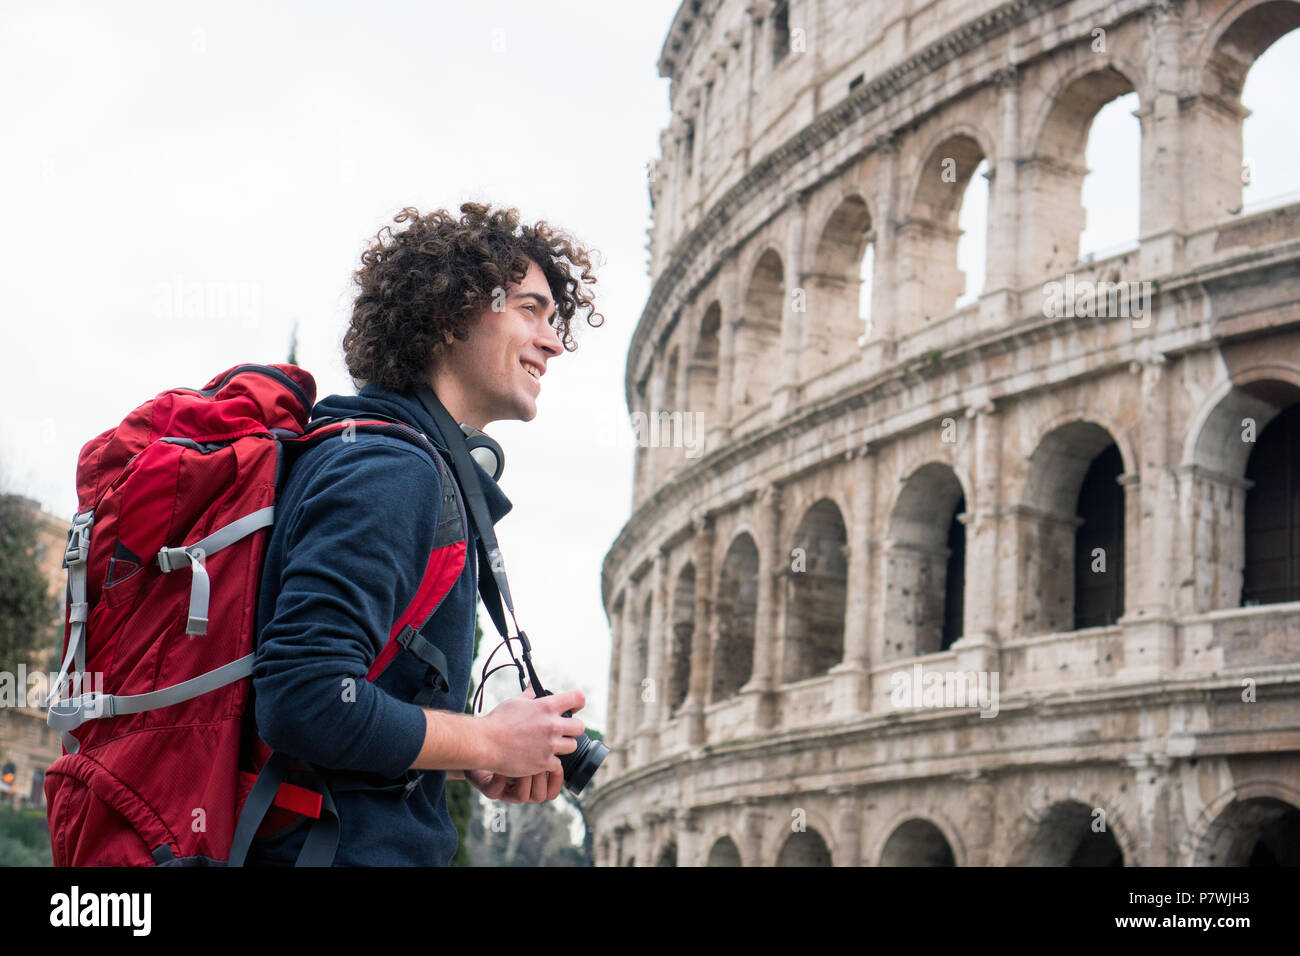 Hübscher junger Tourist Mann mit Kamera und Rucksack, die Bilder von Kolosseum in Rom, Italien. Jungen Touristen, die Bilder von Kolosseum Stockfoto